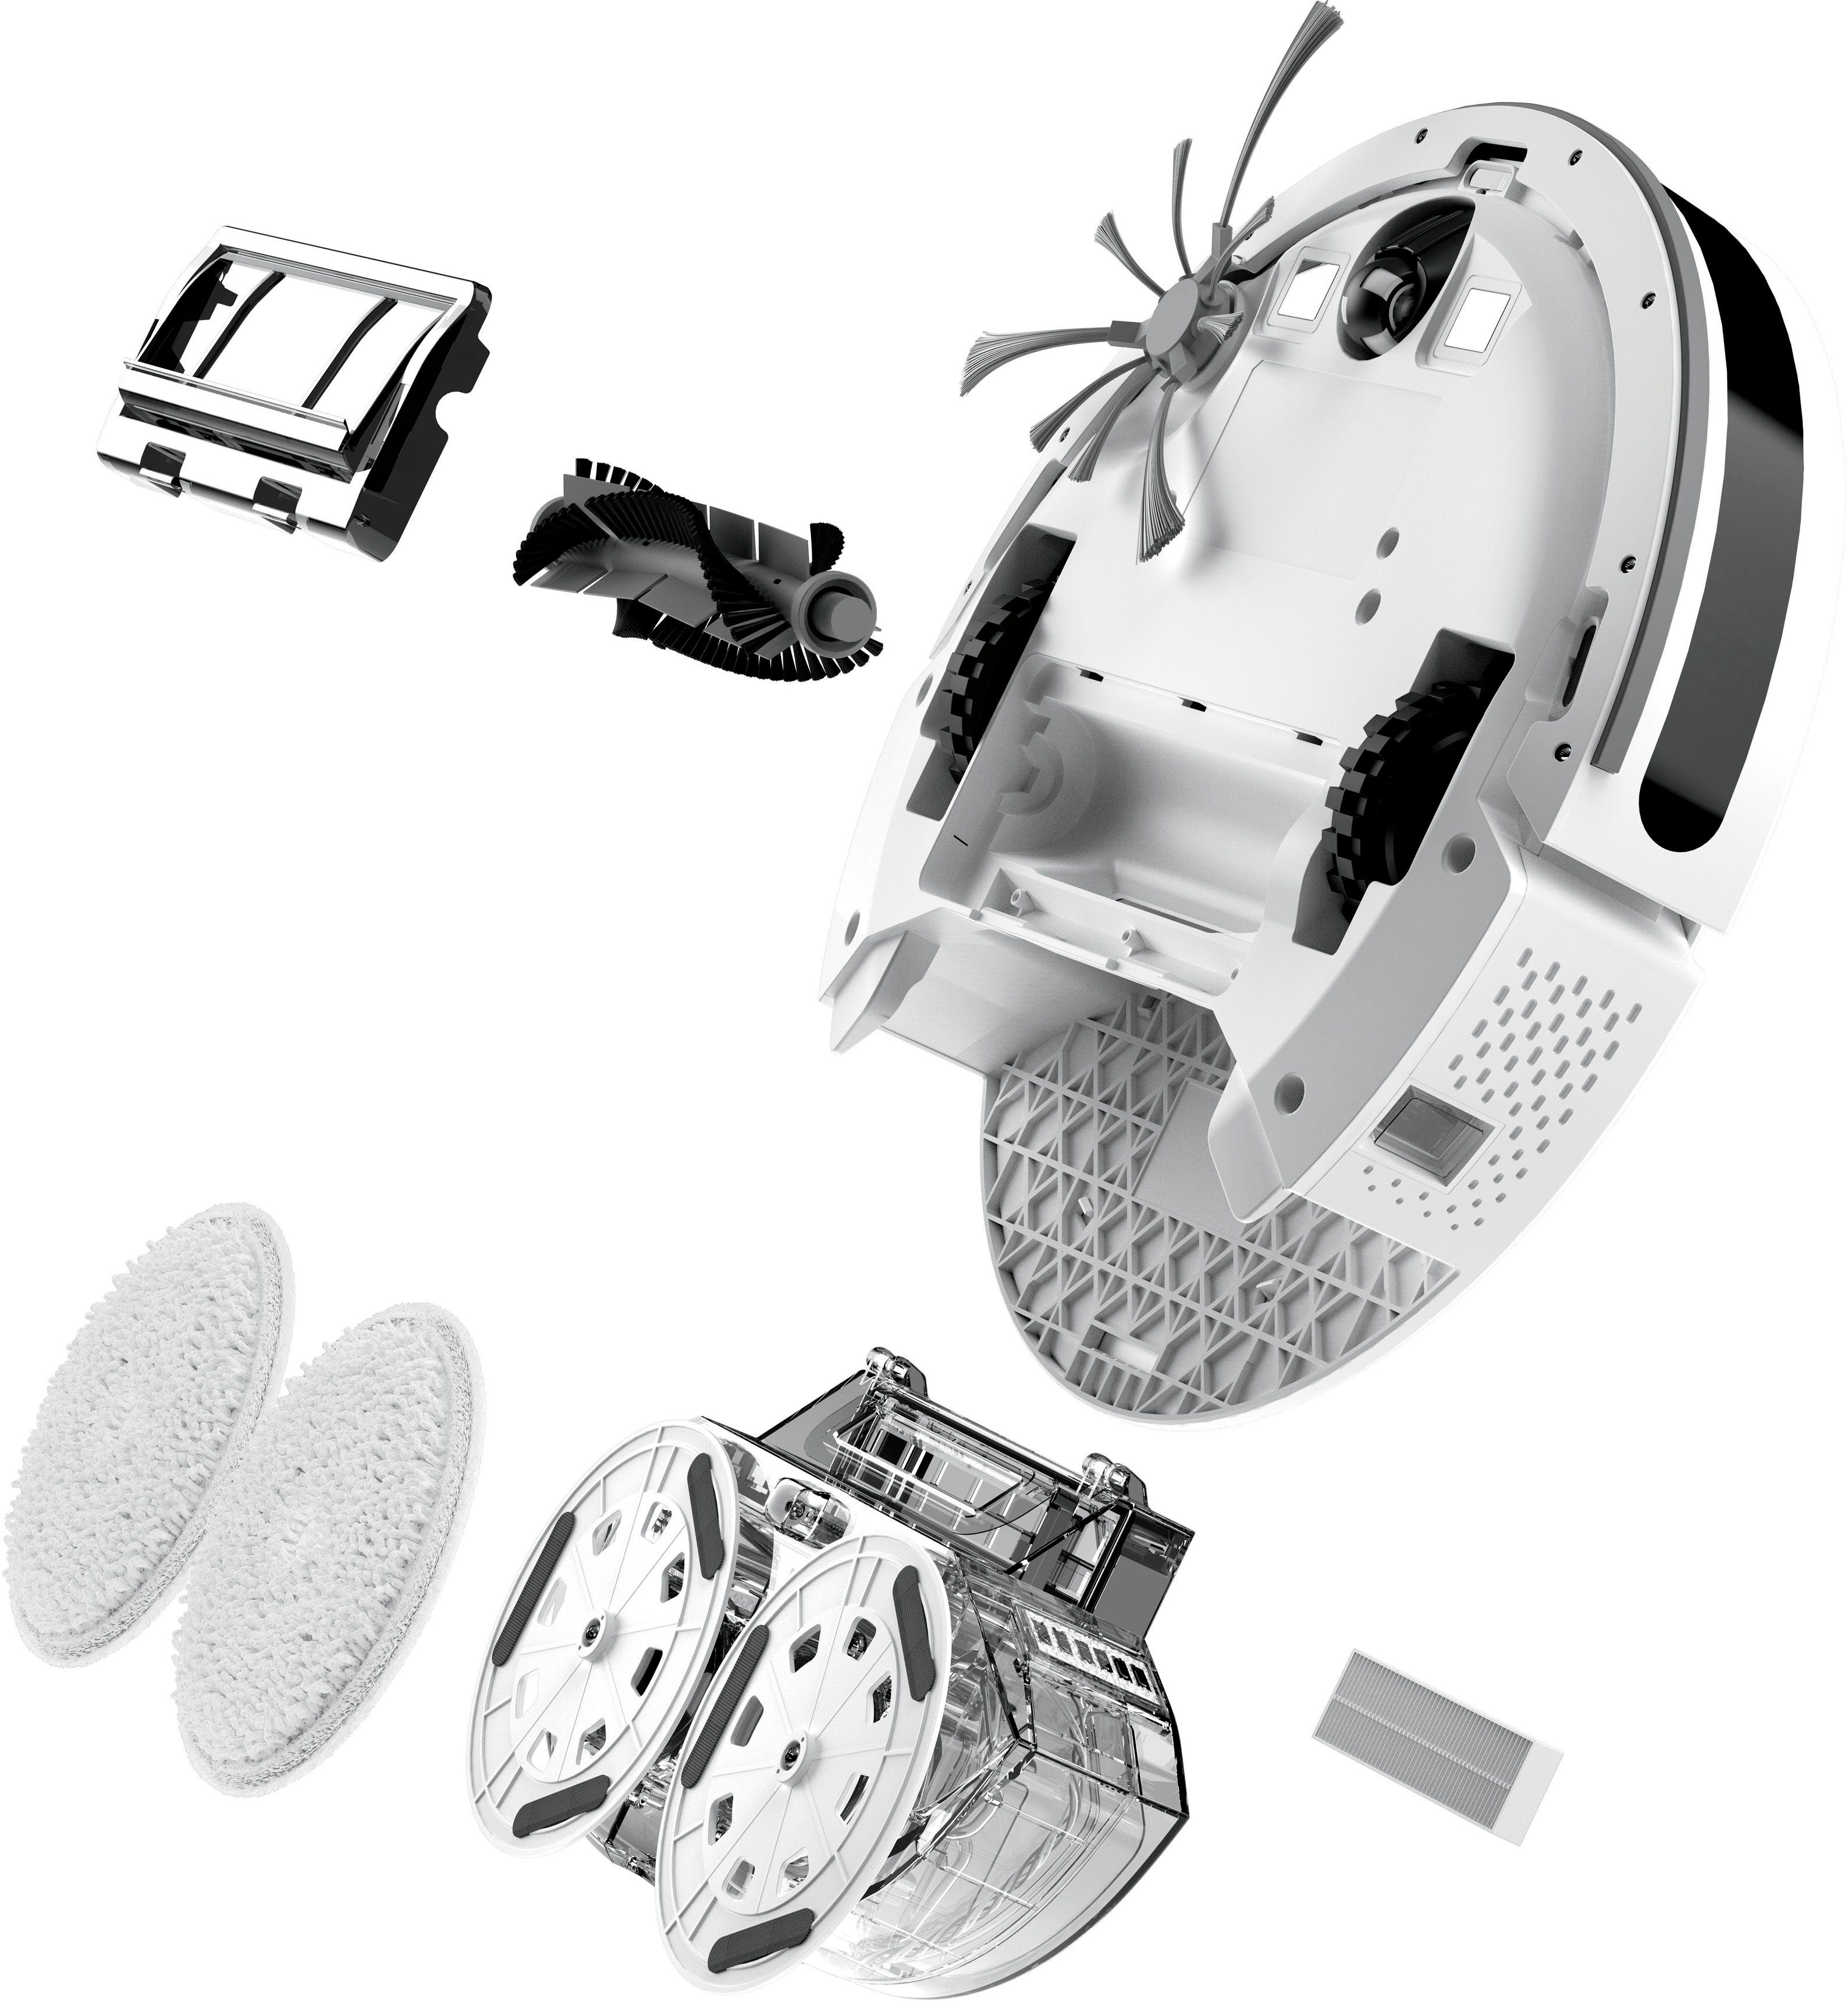 Pet, R5 mit Robot Saugfunktion 44 SpinWave Wischroboter W, Bissell